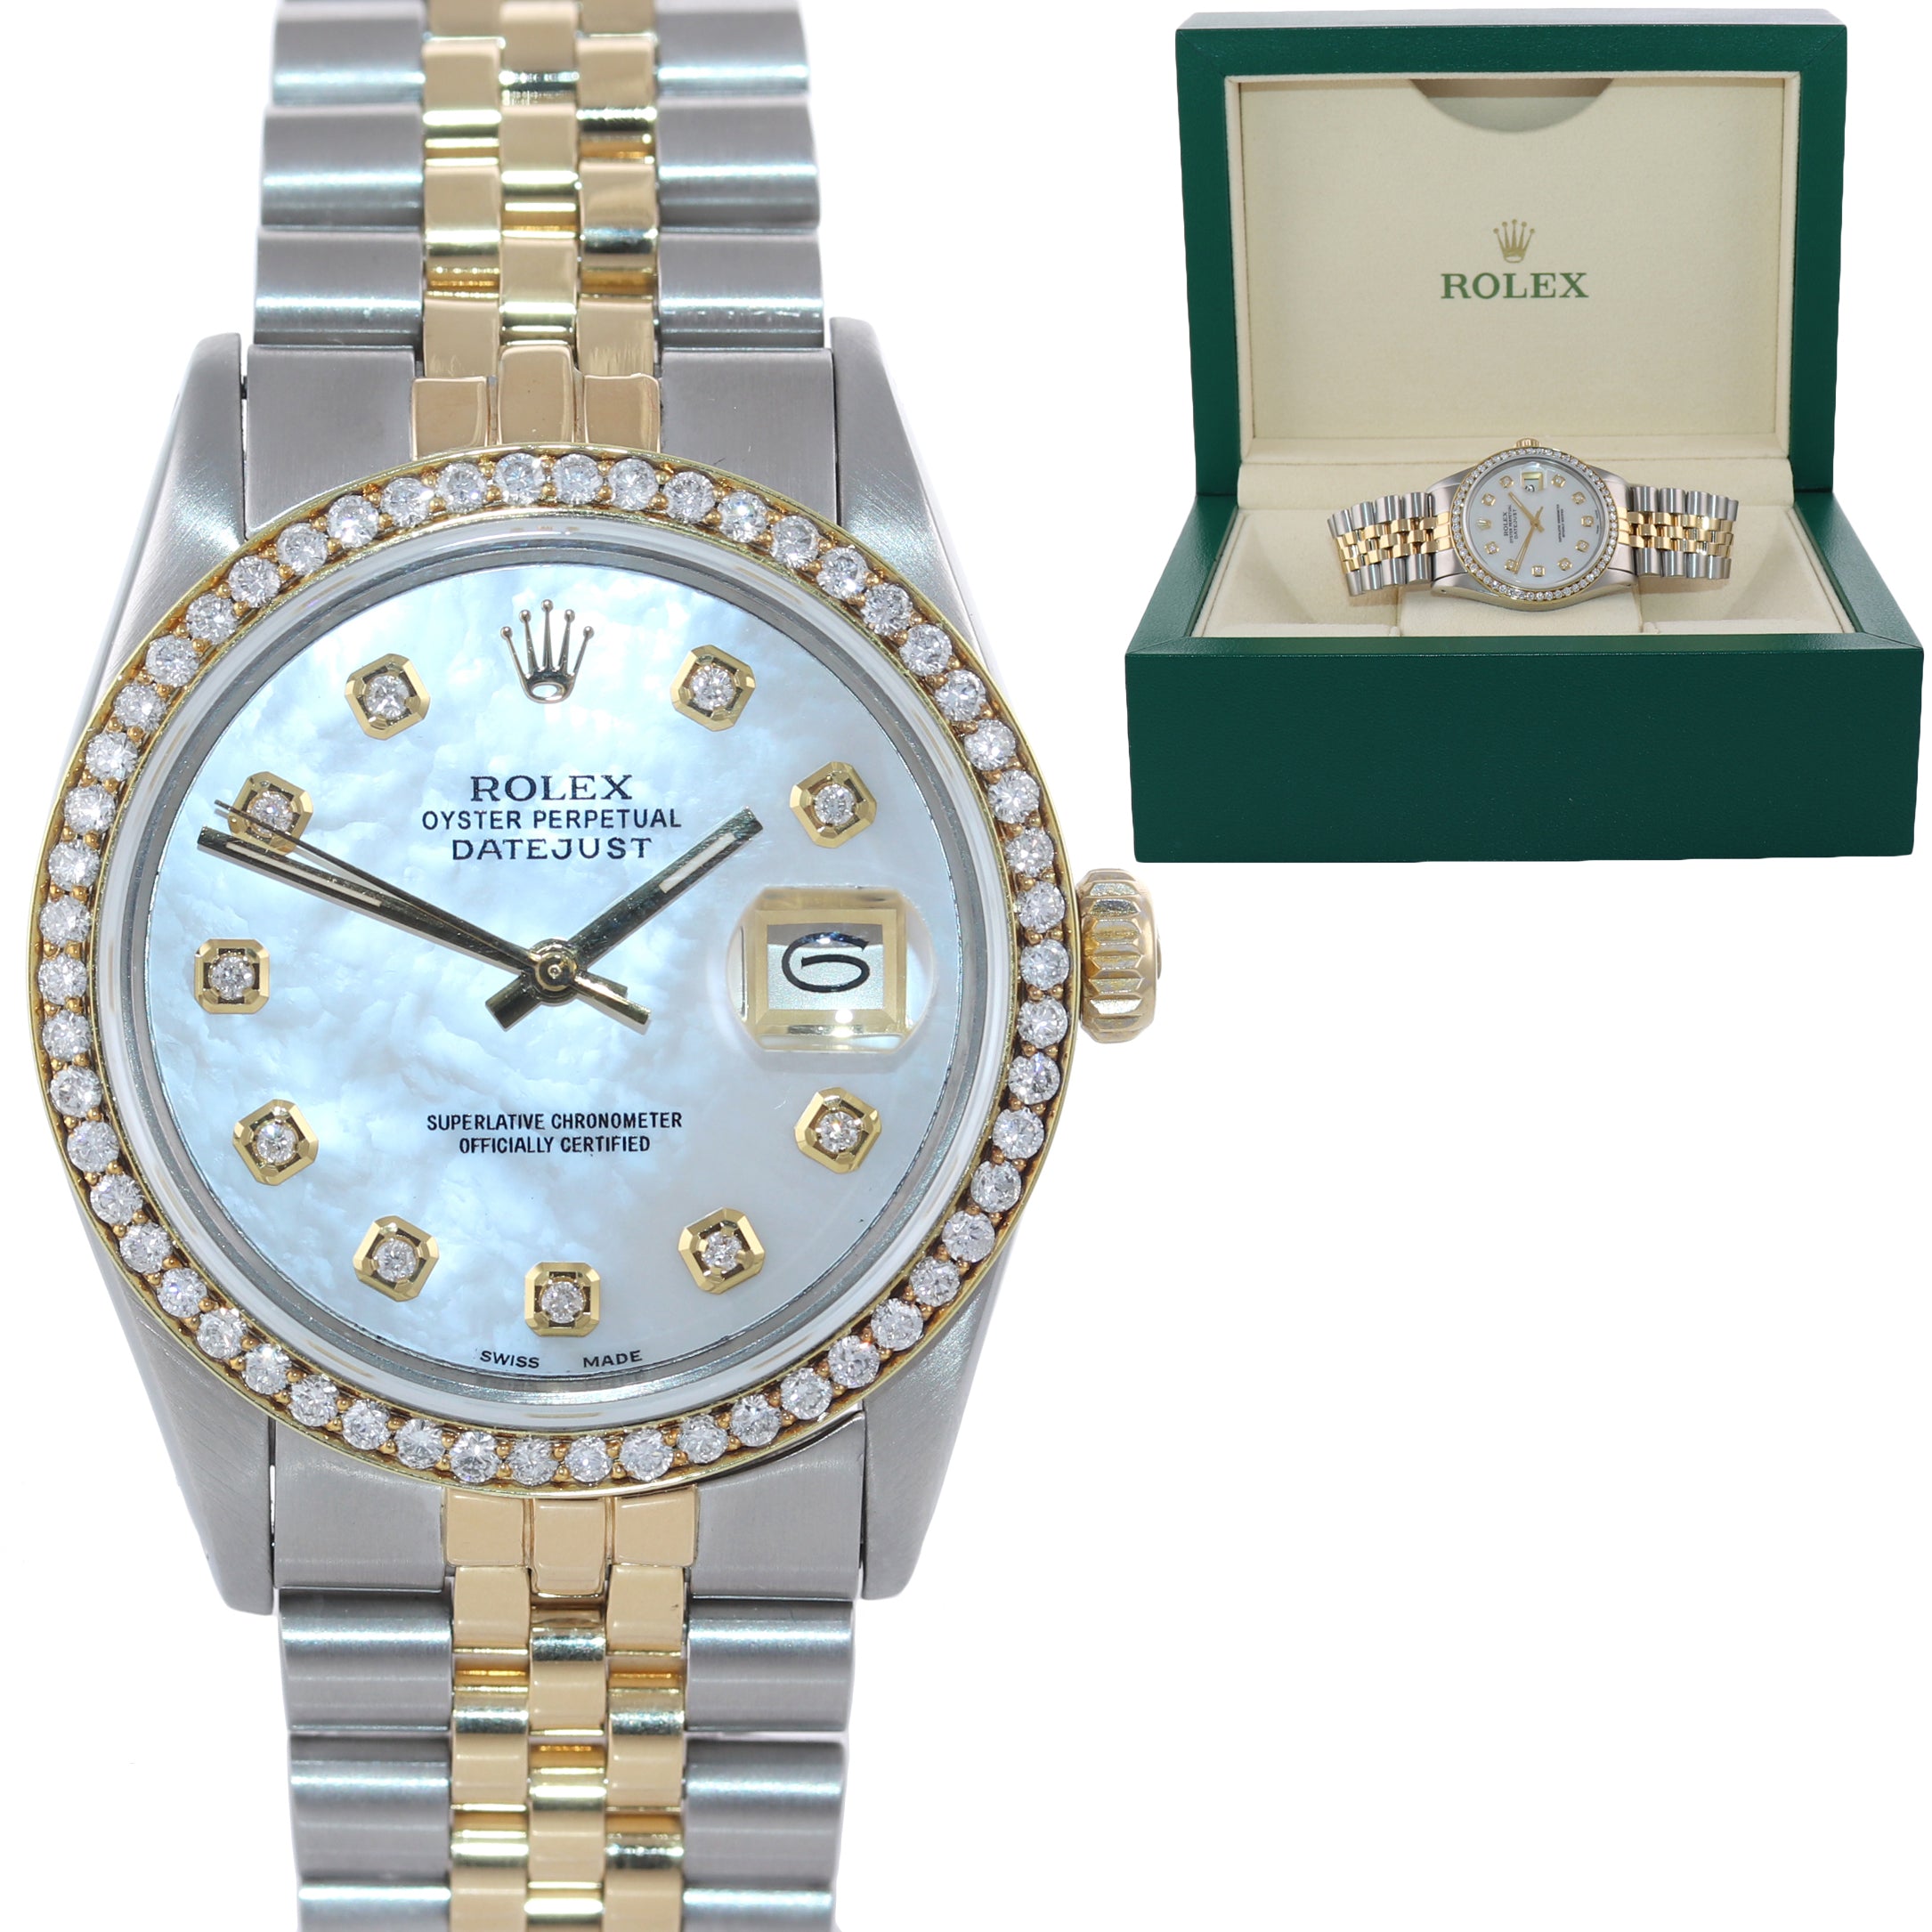 DIAMOND Bezel Rolex DateJust 36mm 16013 Diamond Bezel MOP Dial Watch Box